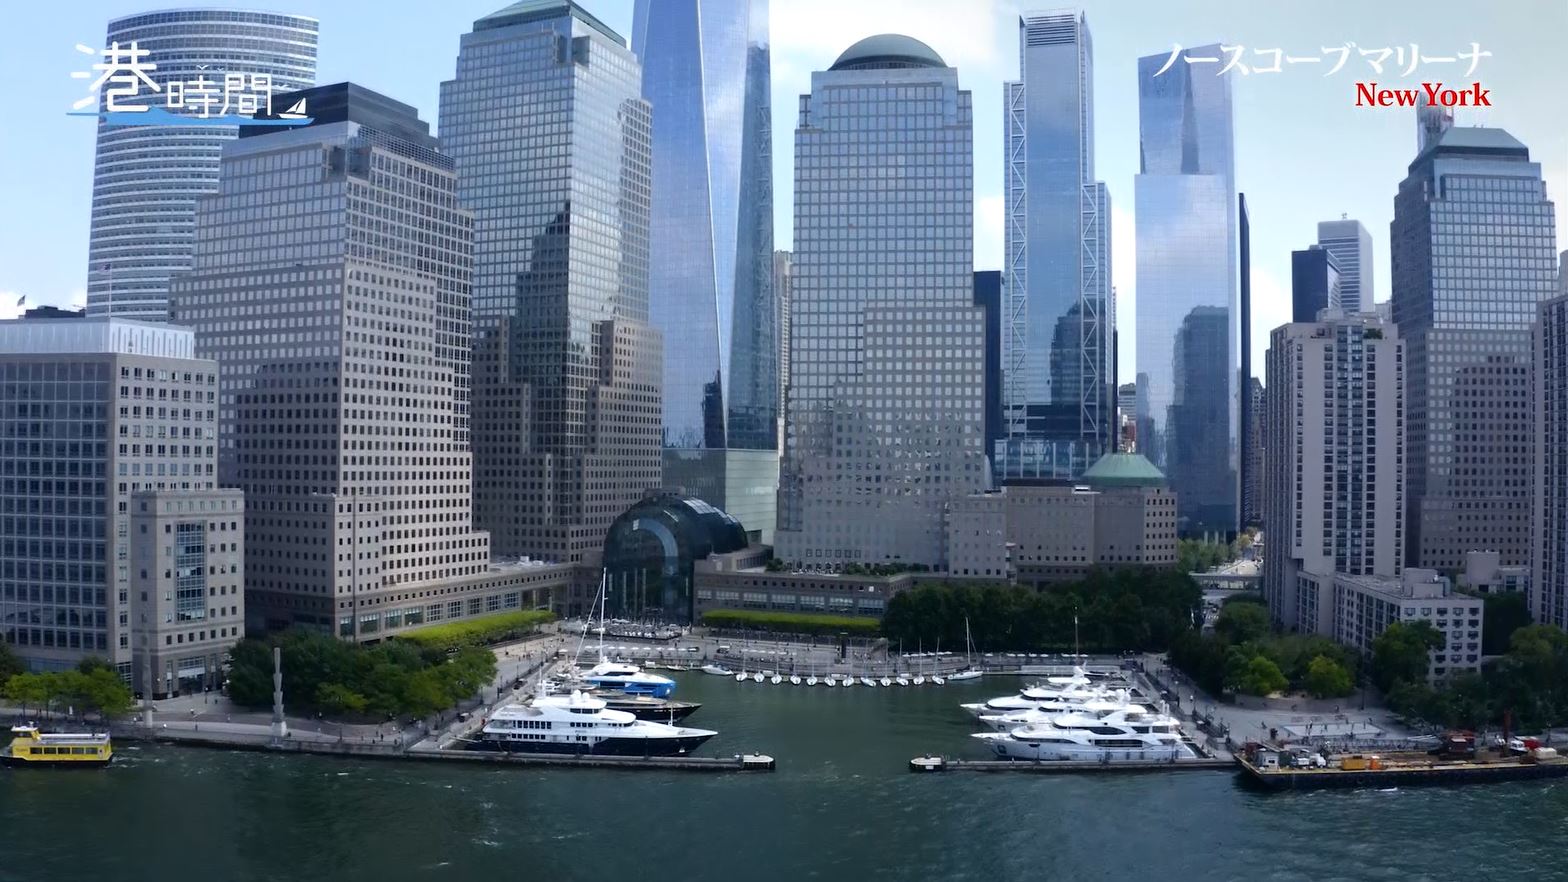 新番組『港時間』スタート！世界各国の美しい港町を紹介、初回は大都会ニューヨークの港